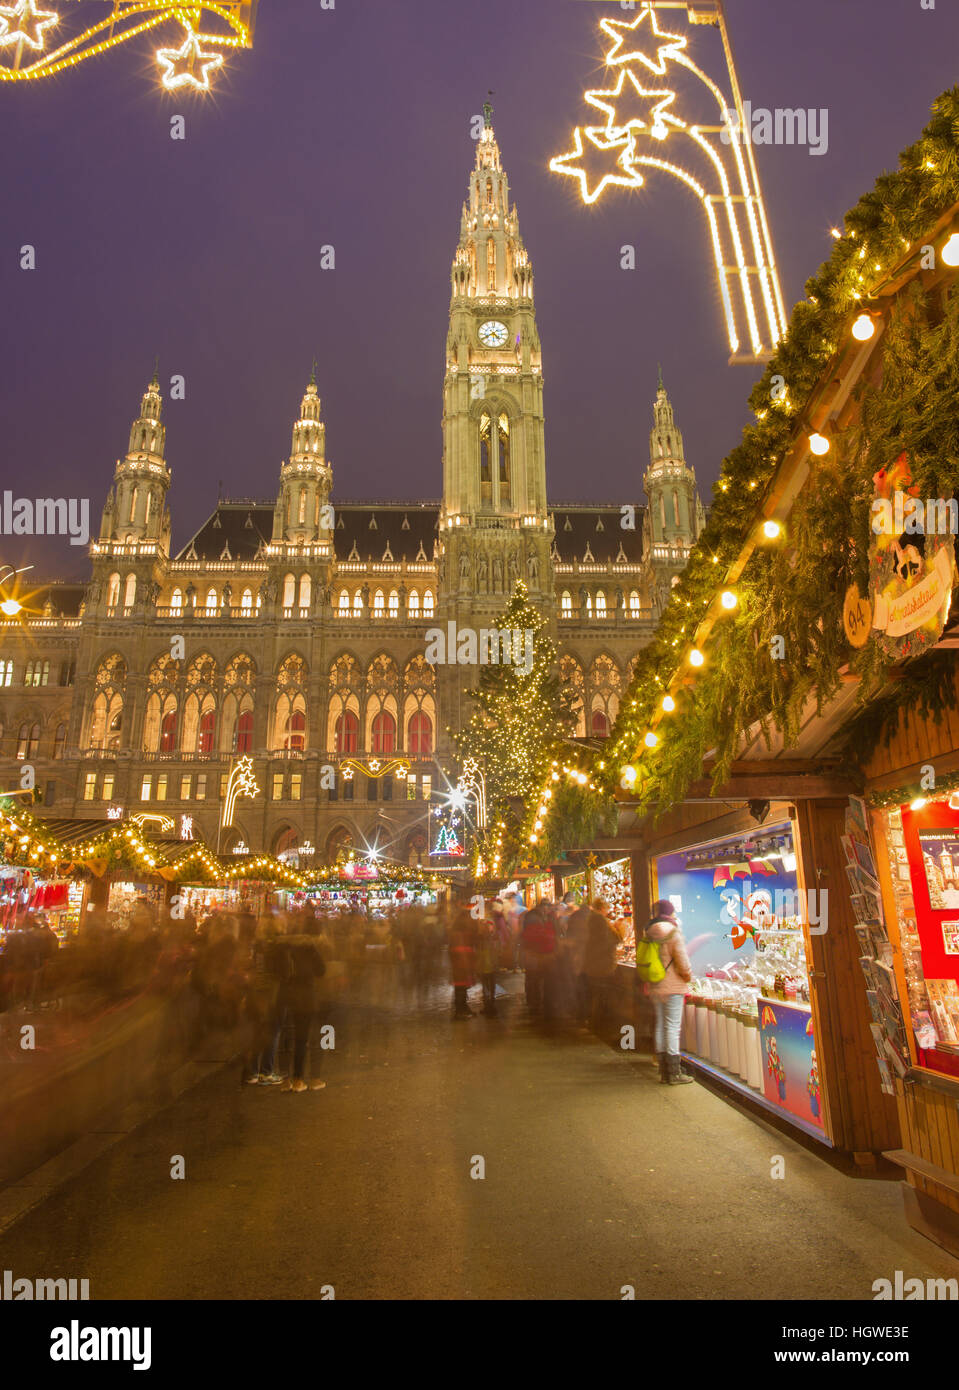 Wien, Österreich - 19. Dezember 2014: Rathaus oder Rathaus und Weihnachten Markt auf dem Rathausplatz Platz. Stockfoto